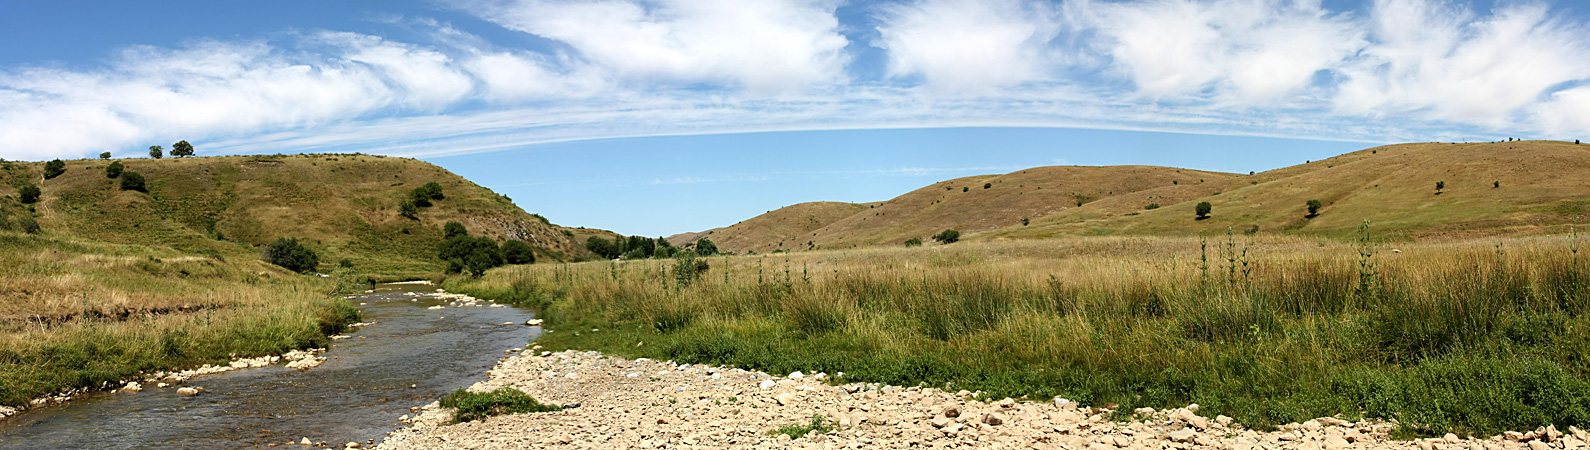 Верхний Боролдай, изображение ландшафта.